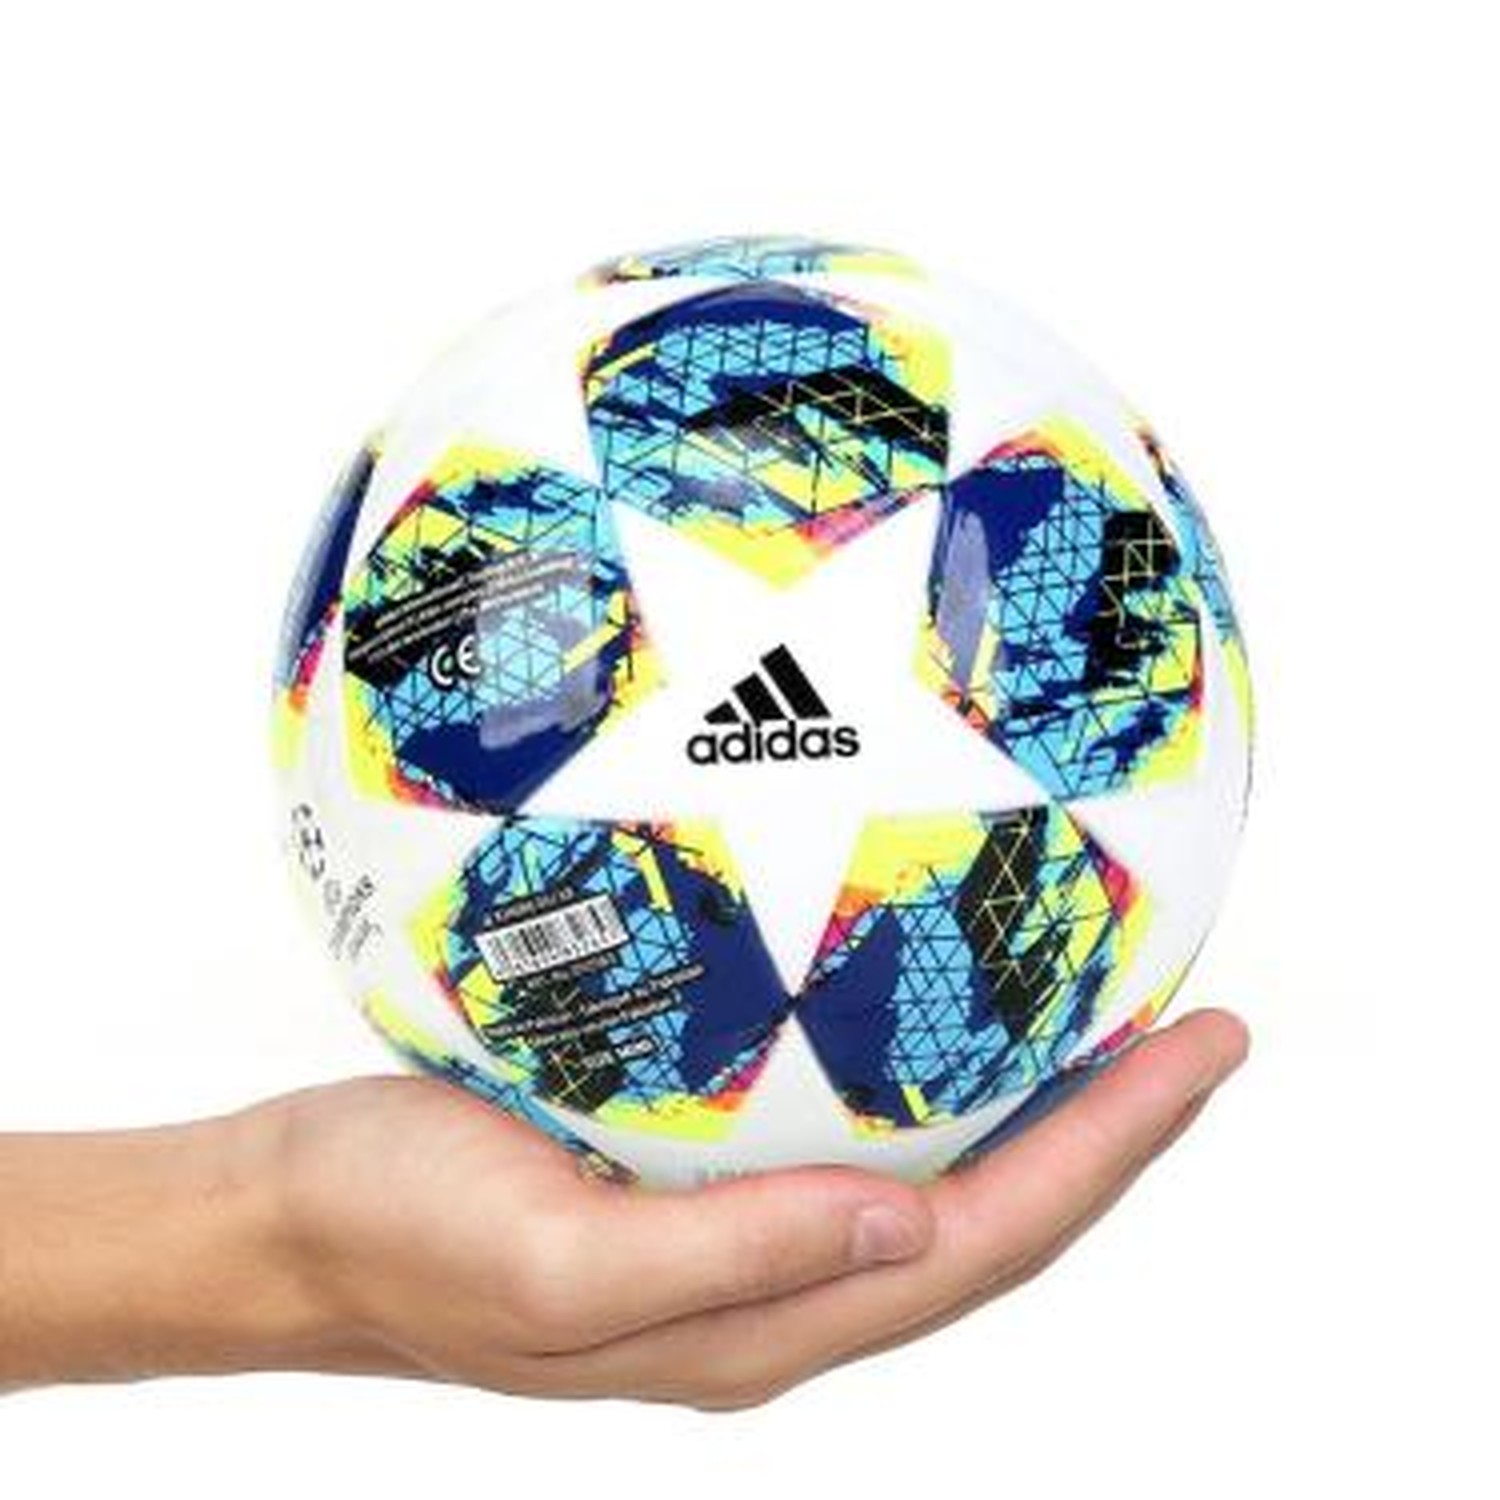 Mini Bola de Futebol Adidas Finale UCL Campo Barata em Promoção e